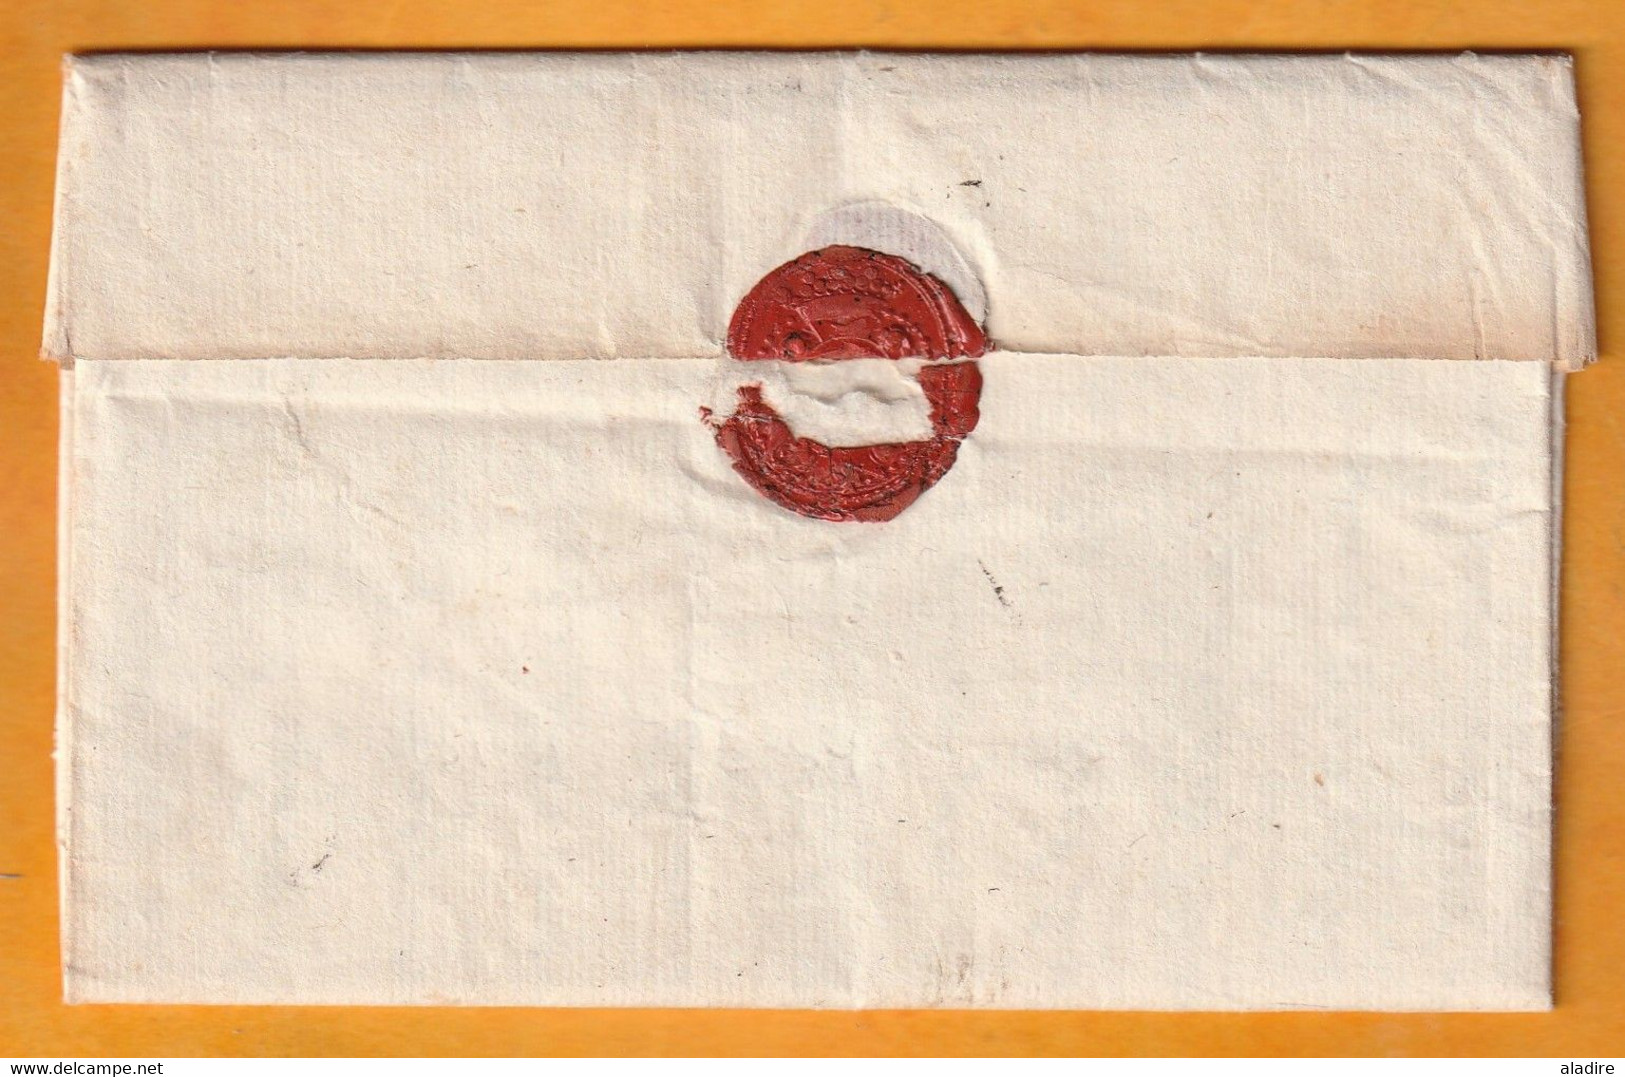 1750 - Marque Postale DAIX - 20 X 5 Mm -  Sur Lettre Pliée Avec Correspondance Vers Grenoble, Isère - Taxe 7 - 1701-1800: Vorläufer XVIII